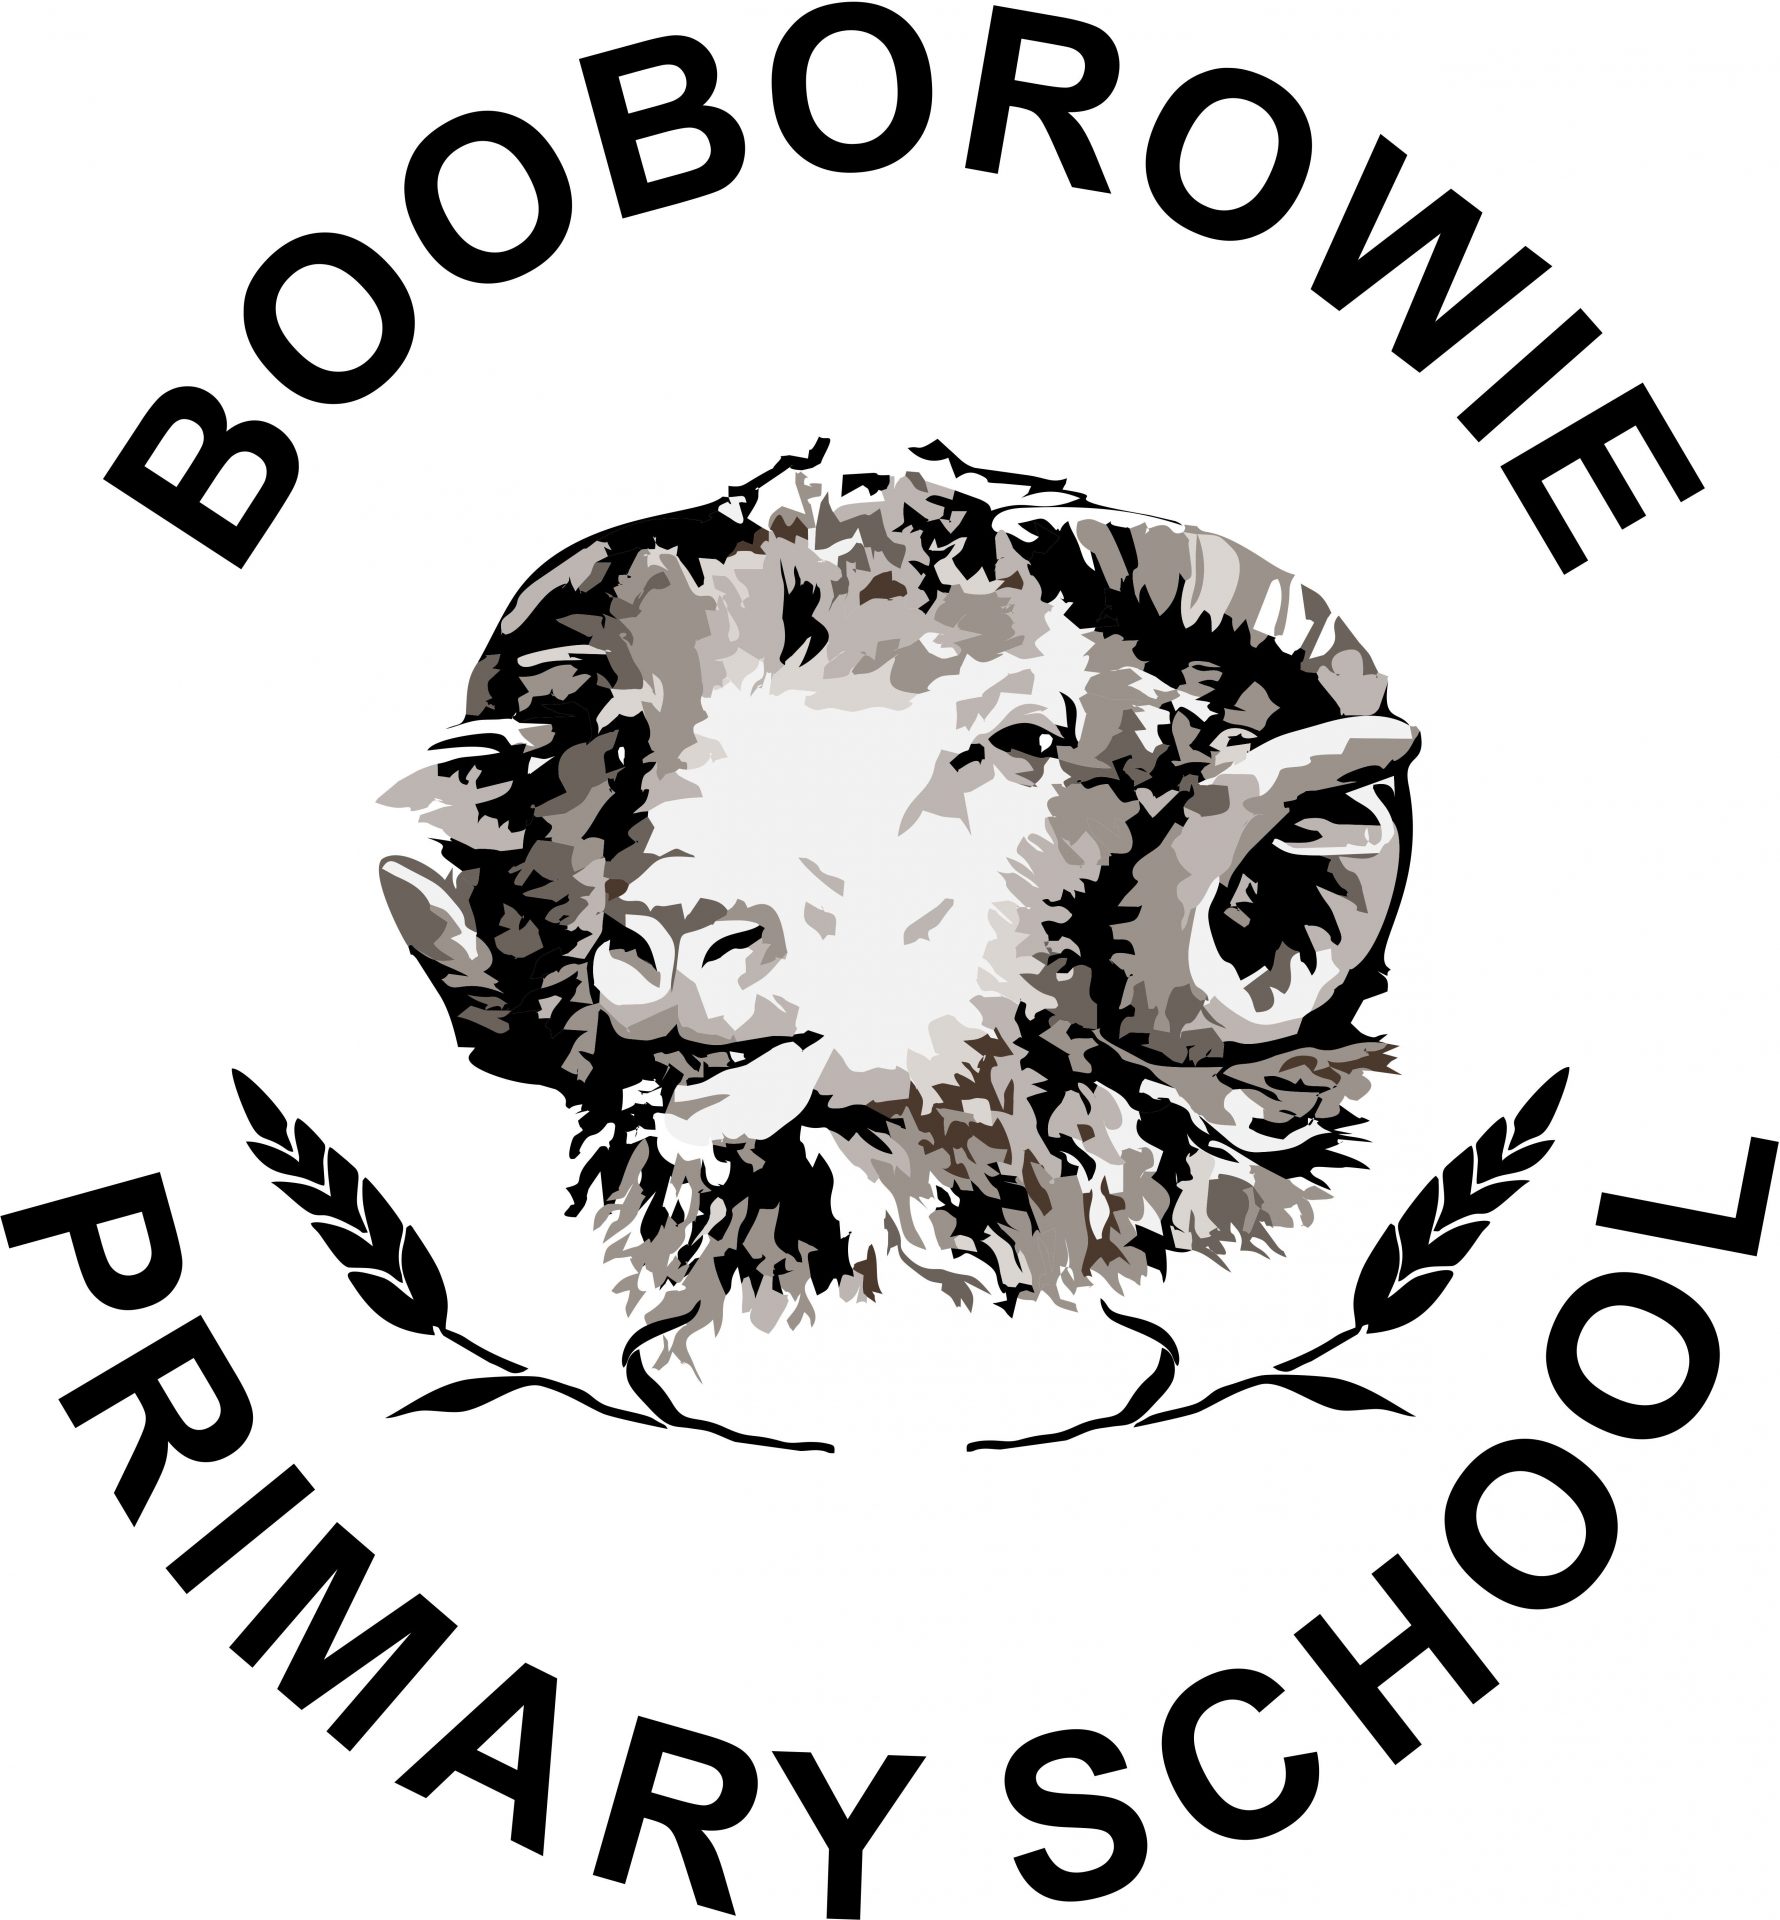 Booborowie Primary School